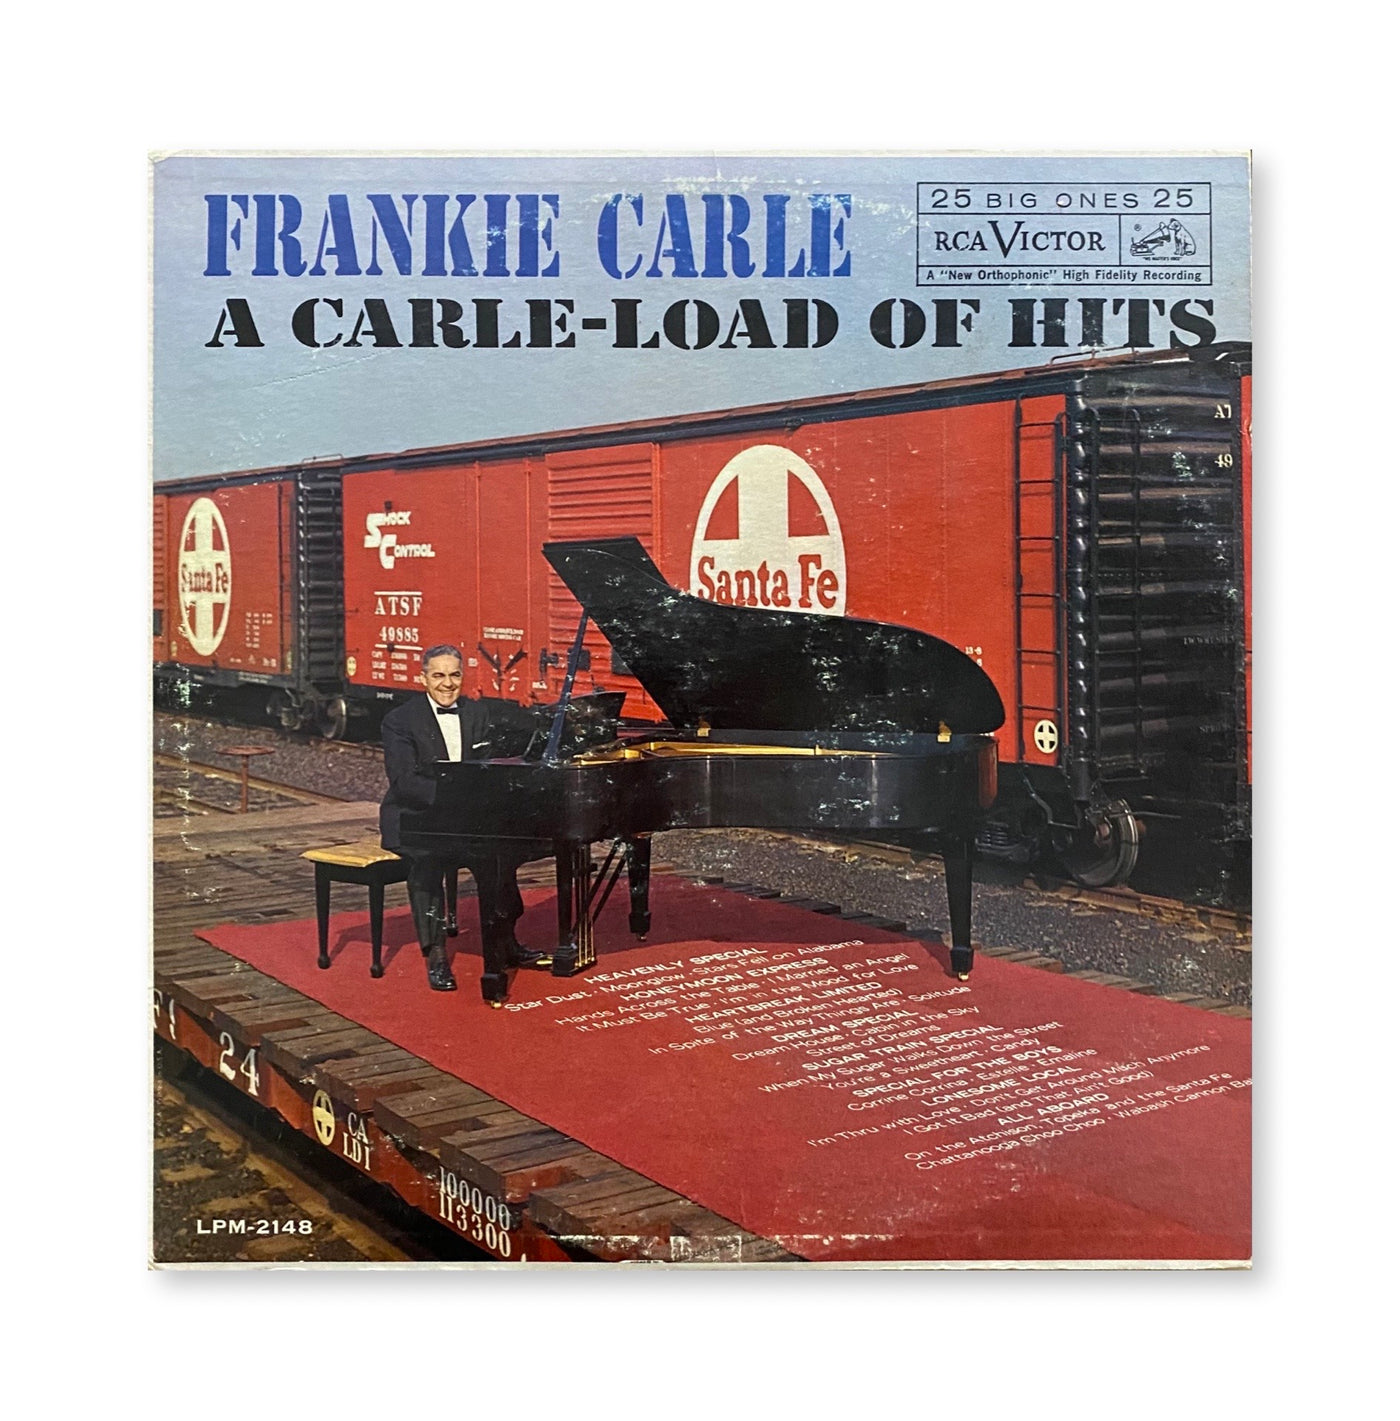 Frankie Carle - A Carle-Load Of Hits